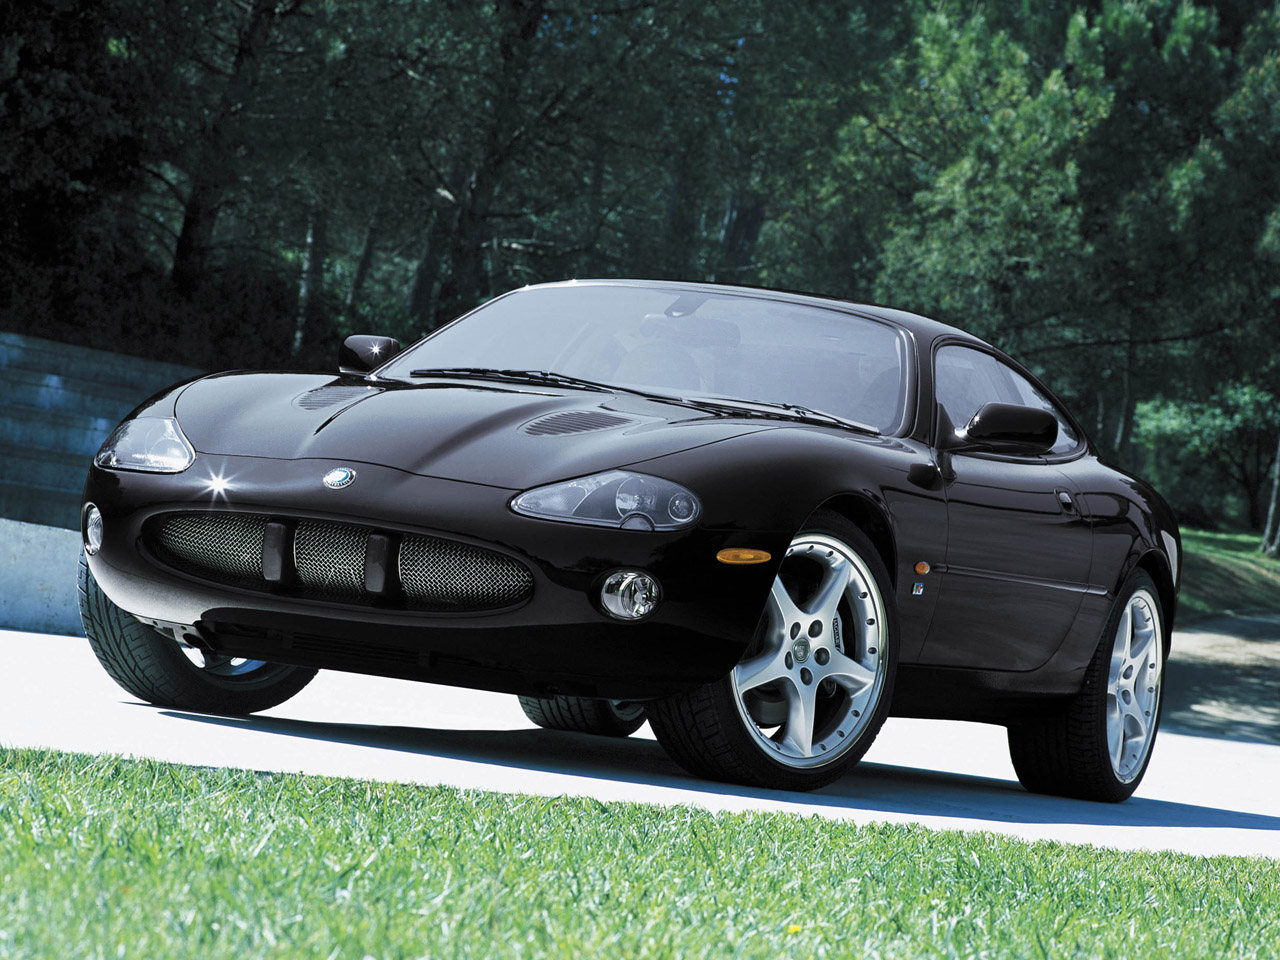 Jaguar XKR Coupe